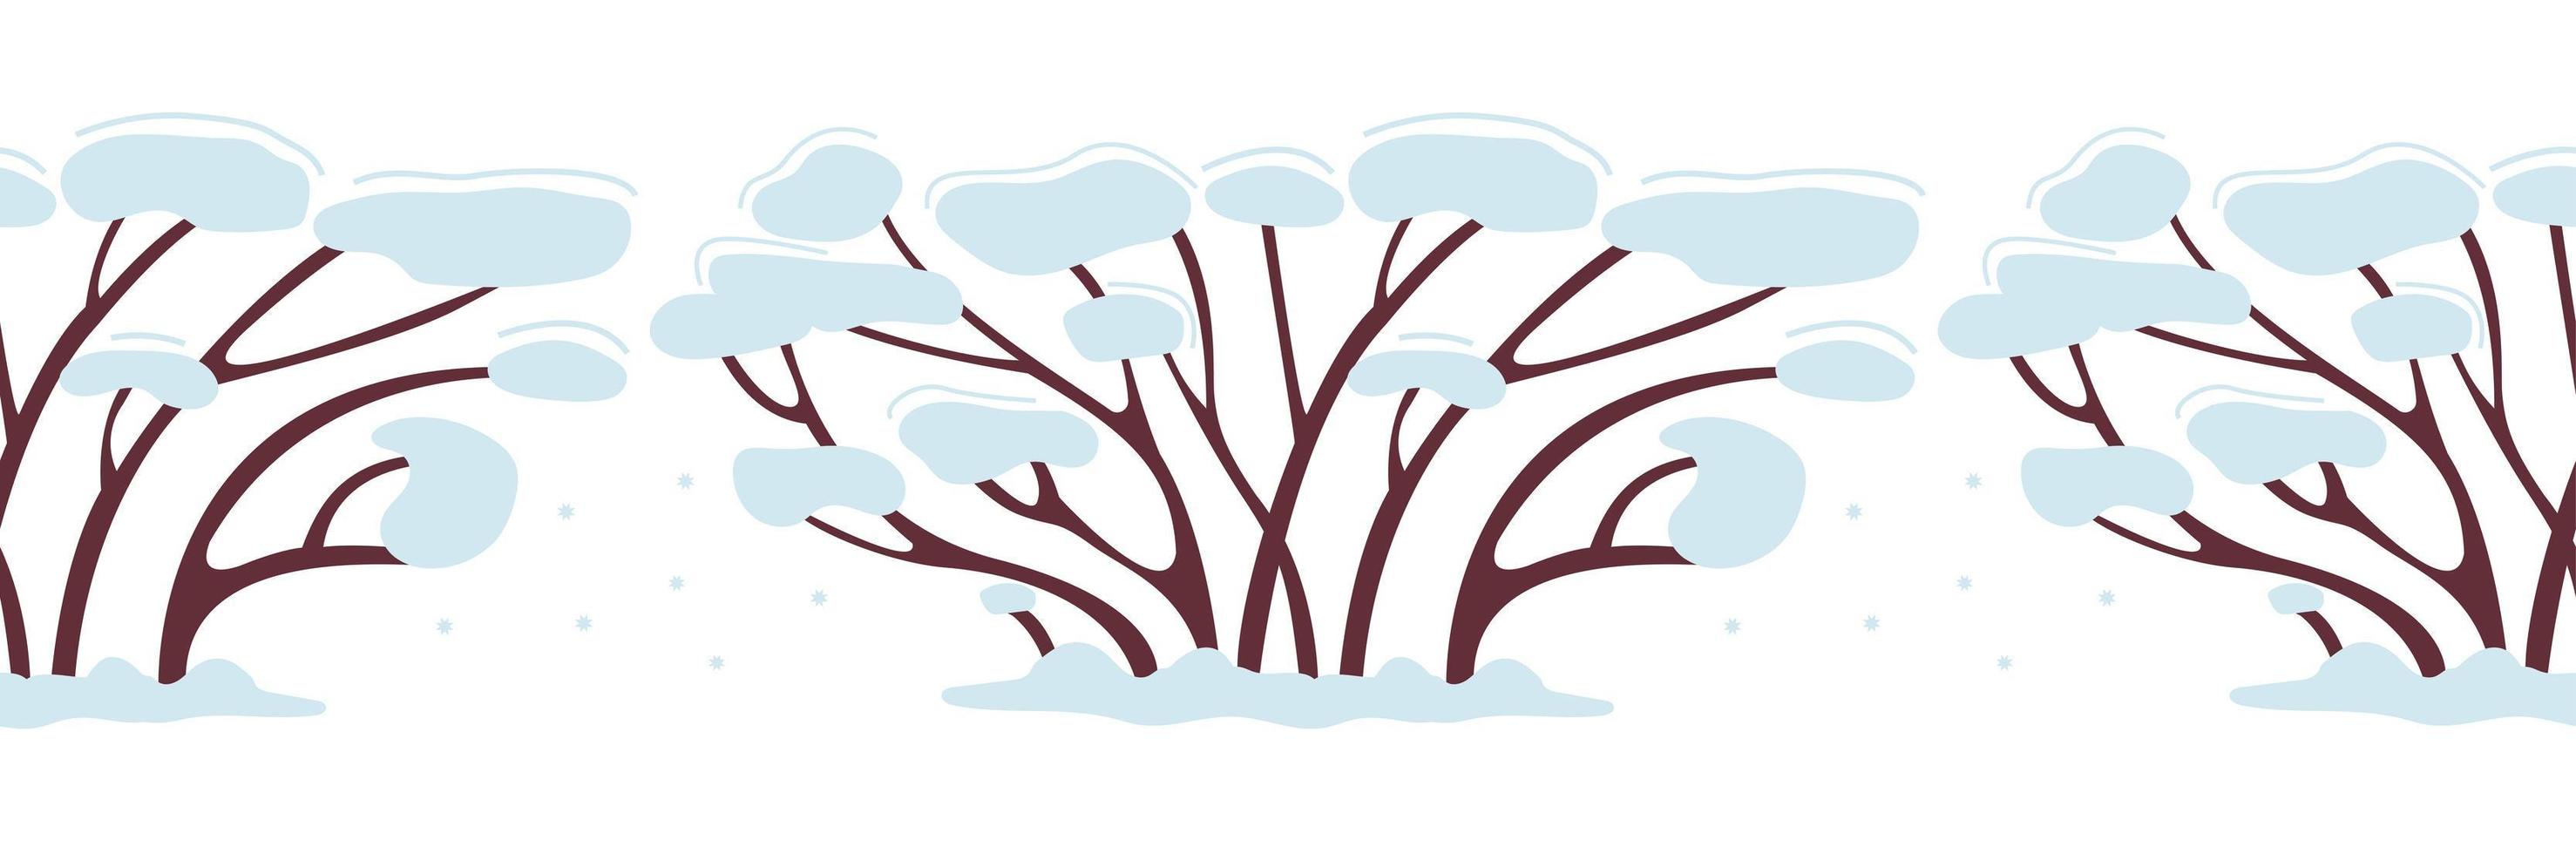 winter naadloze patroon boom of struik in de sneeuw. het groeit in de winter. decor voor nieuwjaarsontwerp. plakband ontwerp. eenvoudige vectorillustratie in vlakke stijl geïsoleerd op een witte achtergrond vector